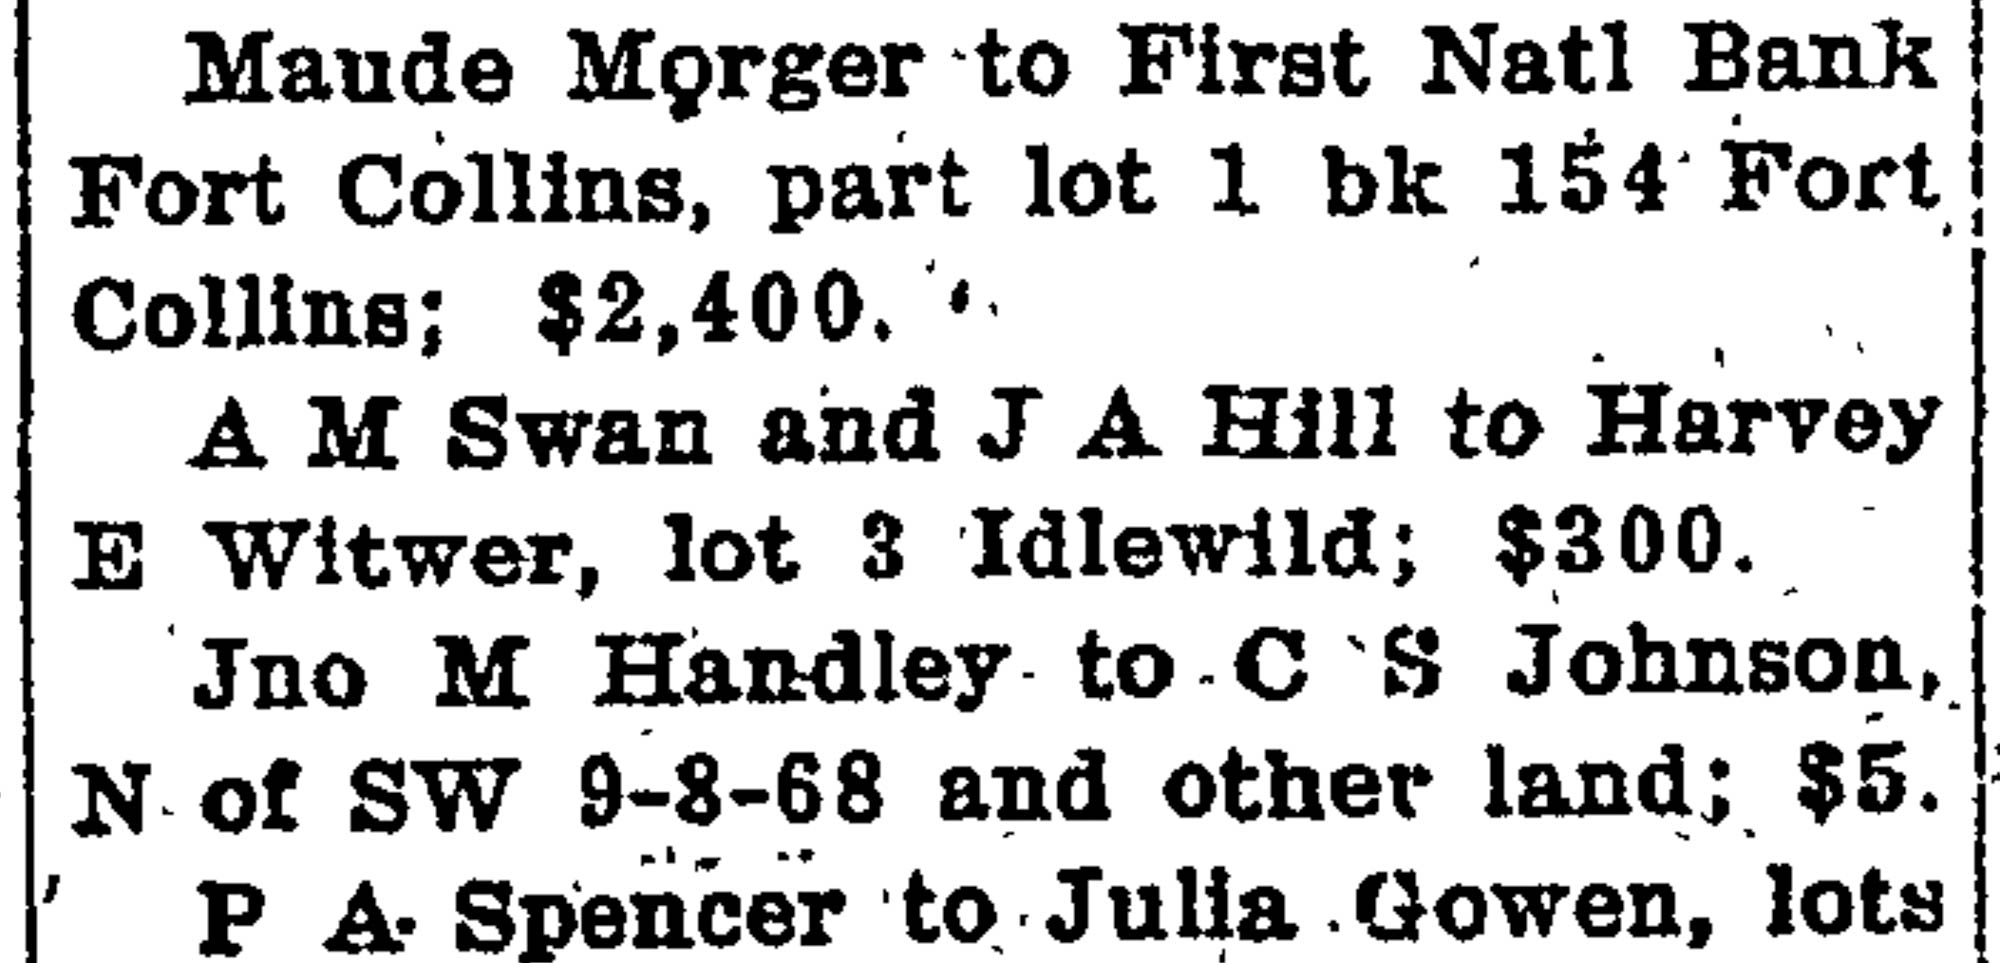 Idlewild Lodge - idlewildlodge.github.io - 1911-09-29 - The Weekly Courier - Harvey Witwer Buys Idlewild Lot 3